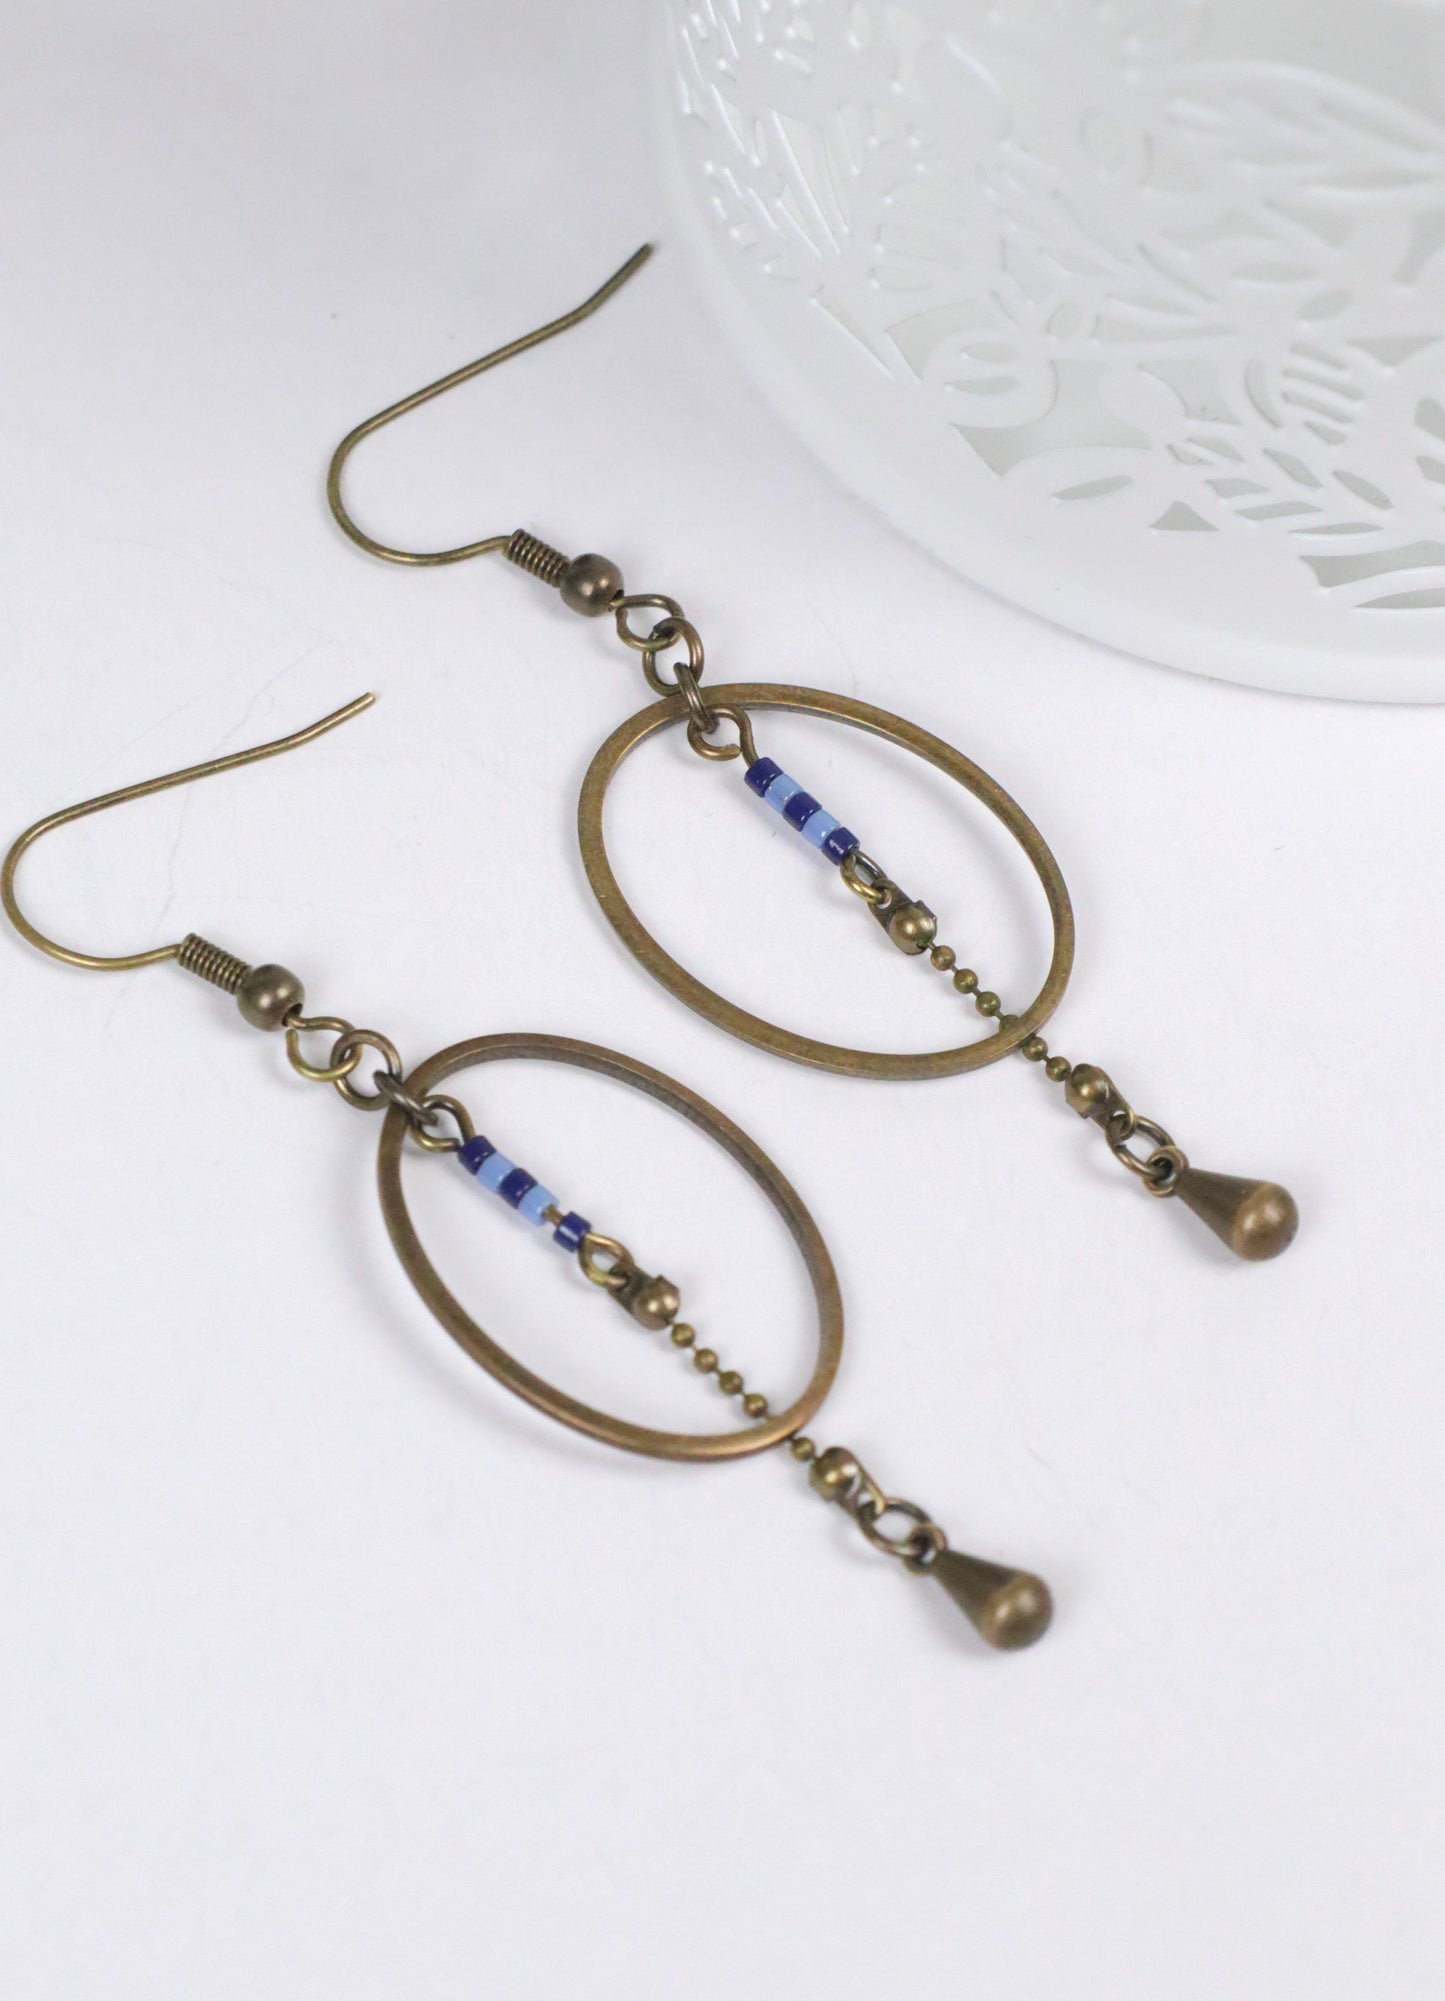 Gros plan des boucles d'oreilles pendantes, modèle Alana, ovales en laiton avec des perles bleues, à plat sur un fond blanc